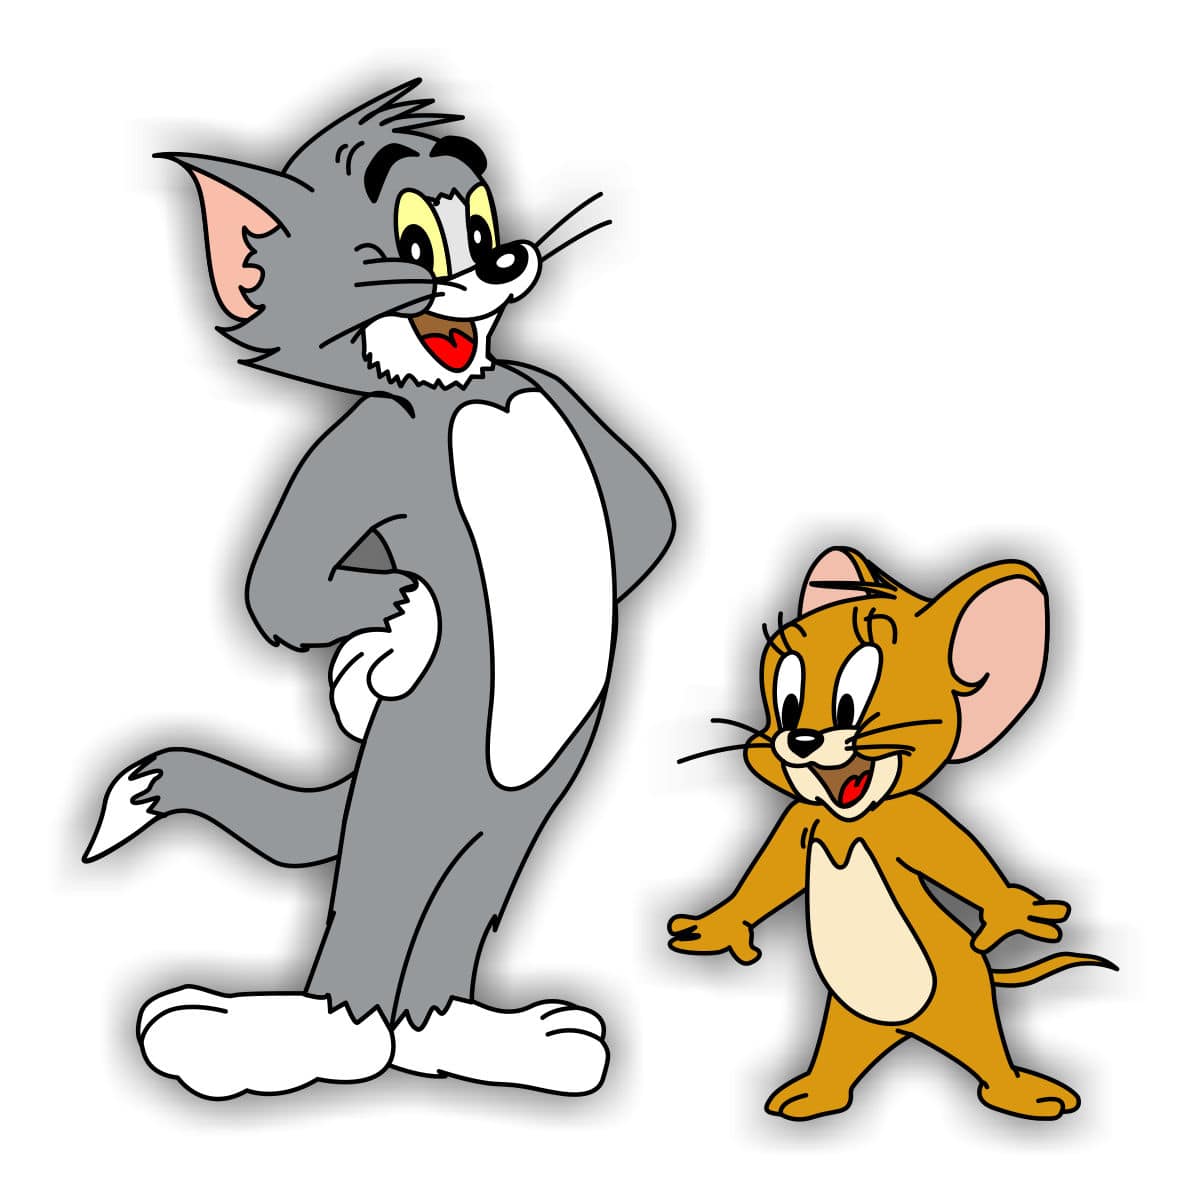 Игр й том. Tom and Jerry. Том и Джерри Джерри. Герои мультика том и Джерри. Том и Джерри (Tom and Jerry) 1940.